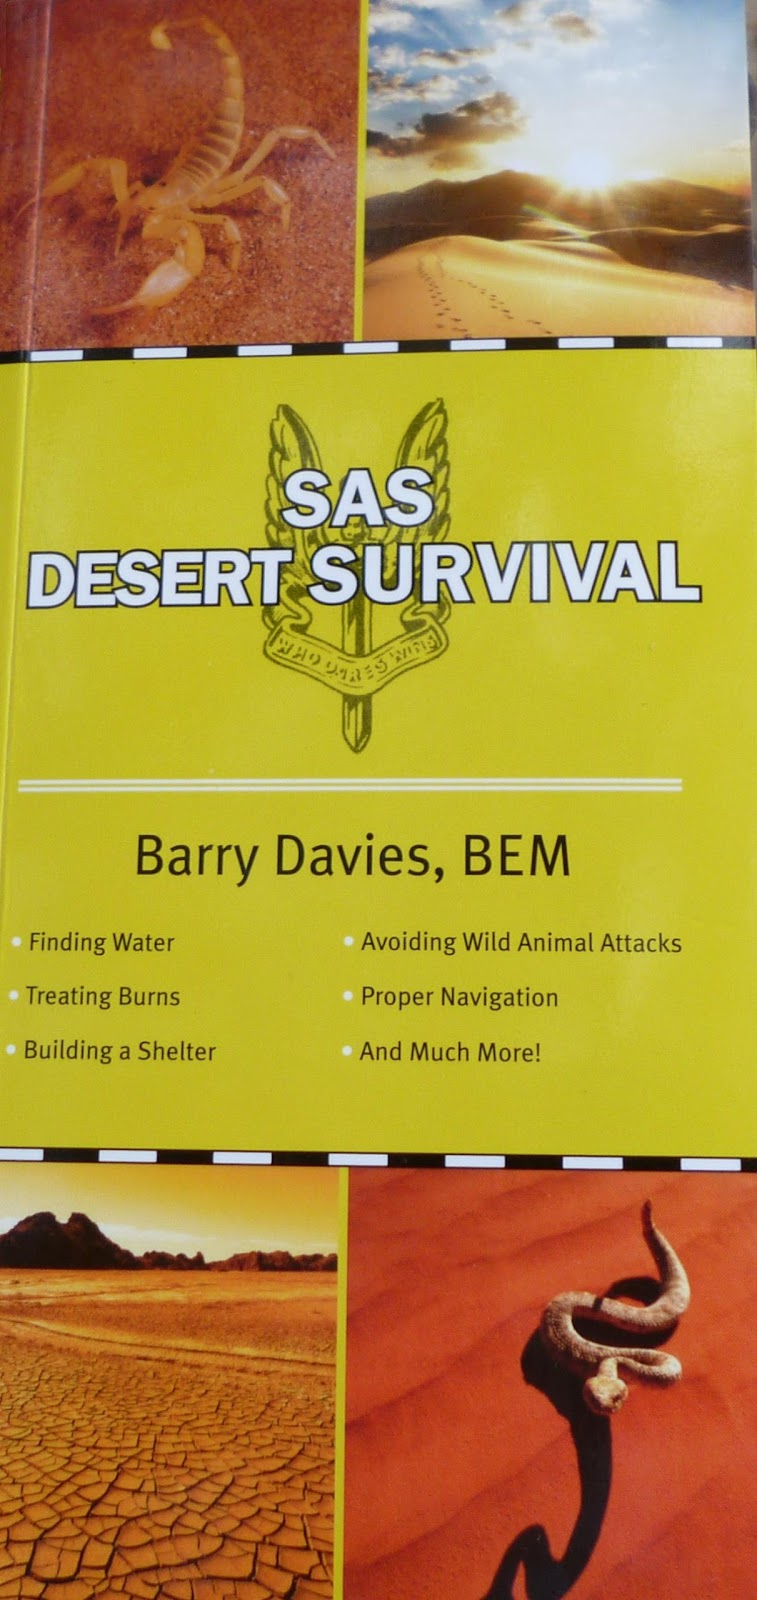 SAS Desert Survival Guide.JPG